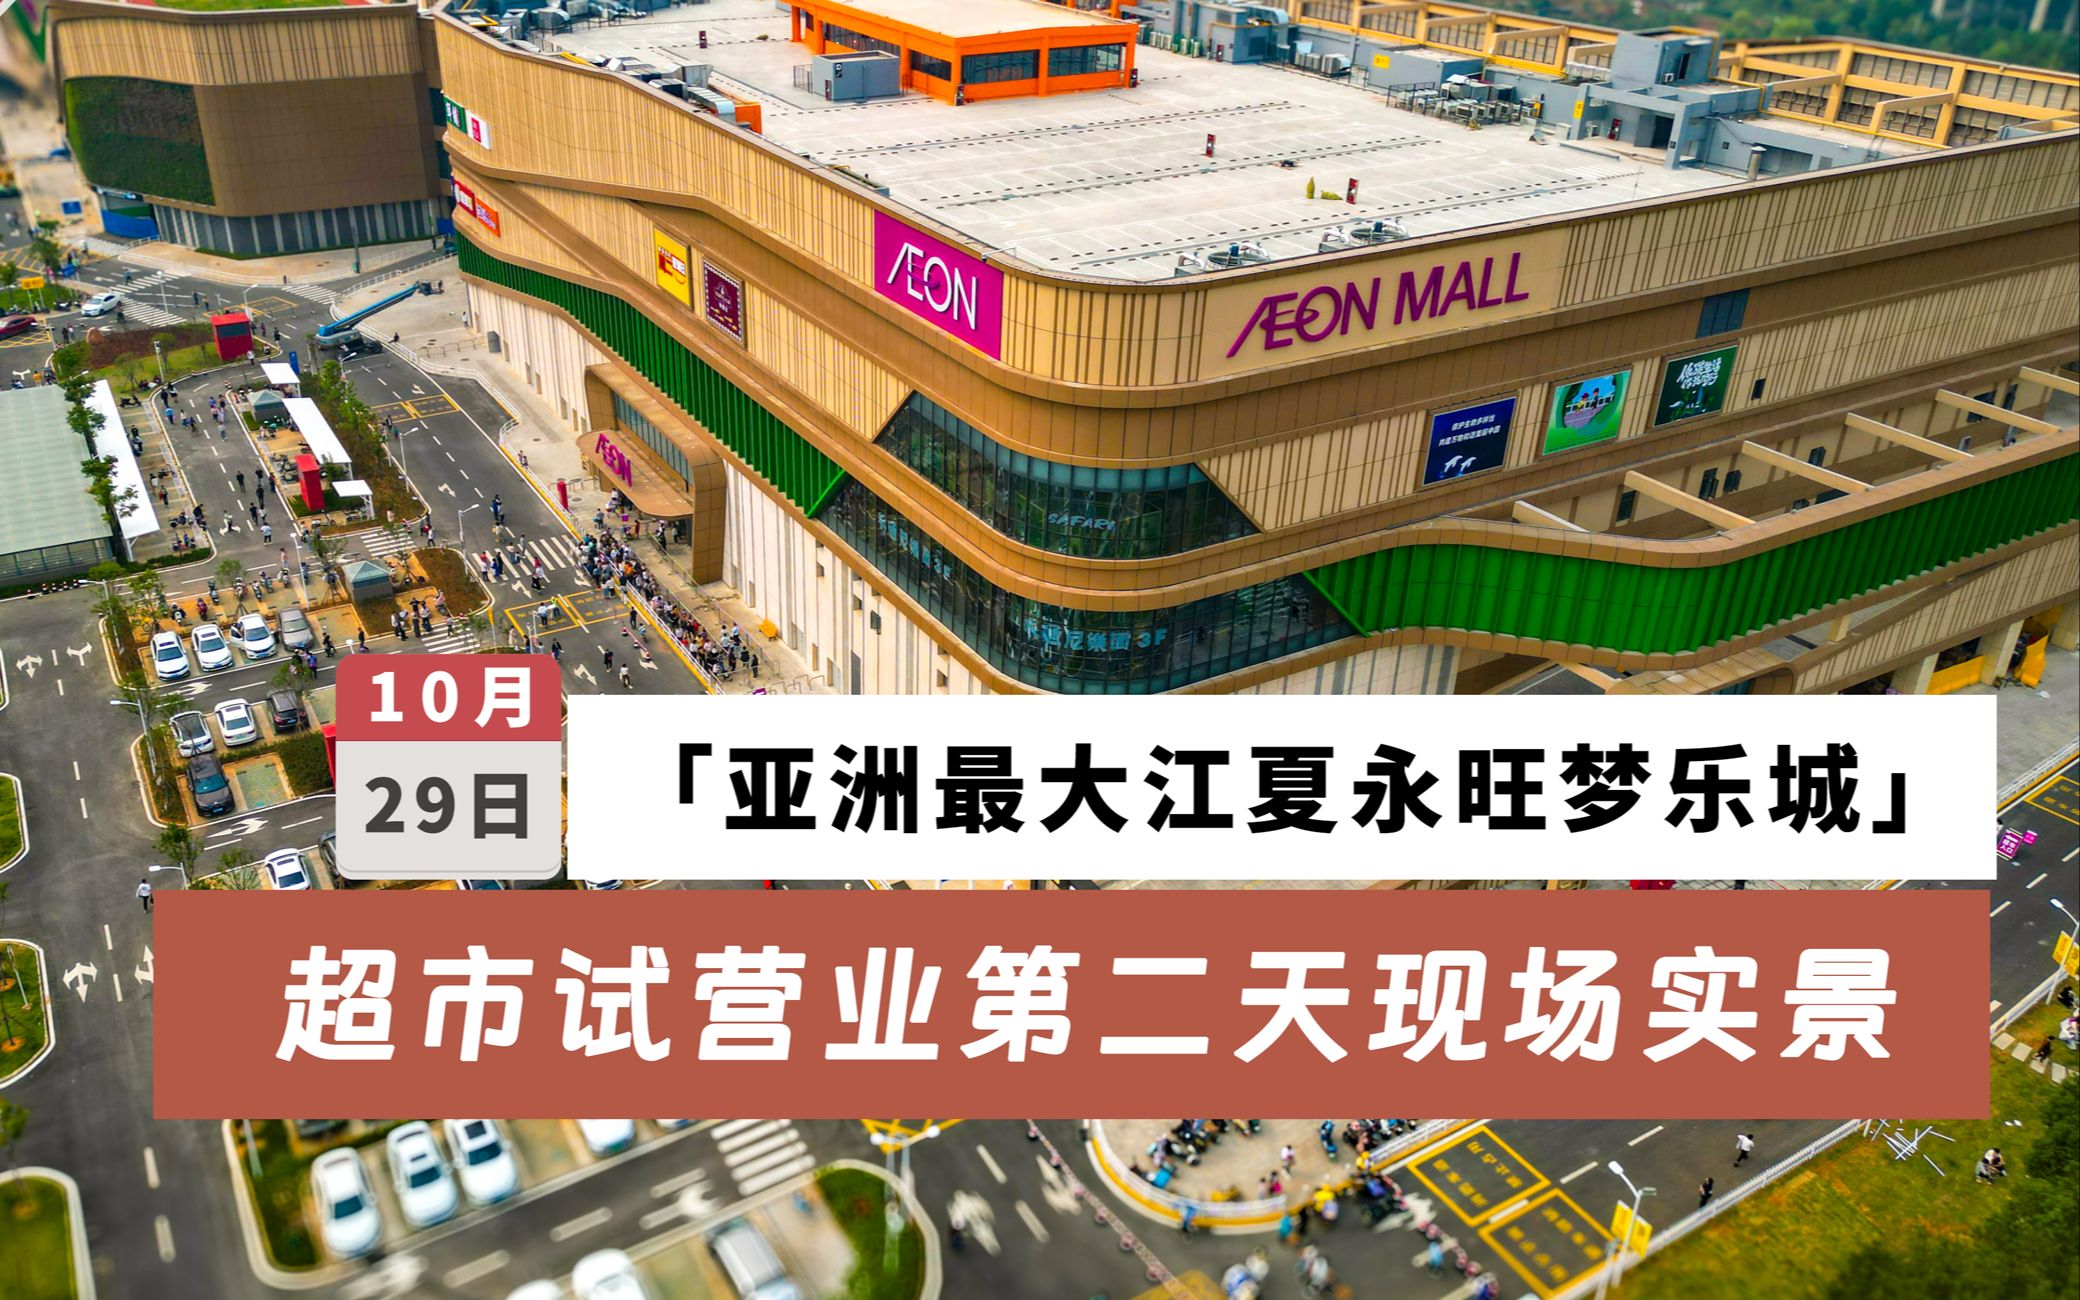 亚洲最大之武汉江夏永旺梦乐城超市试营业第二天现场实景!体验如何?